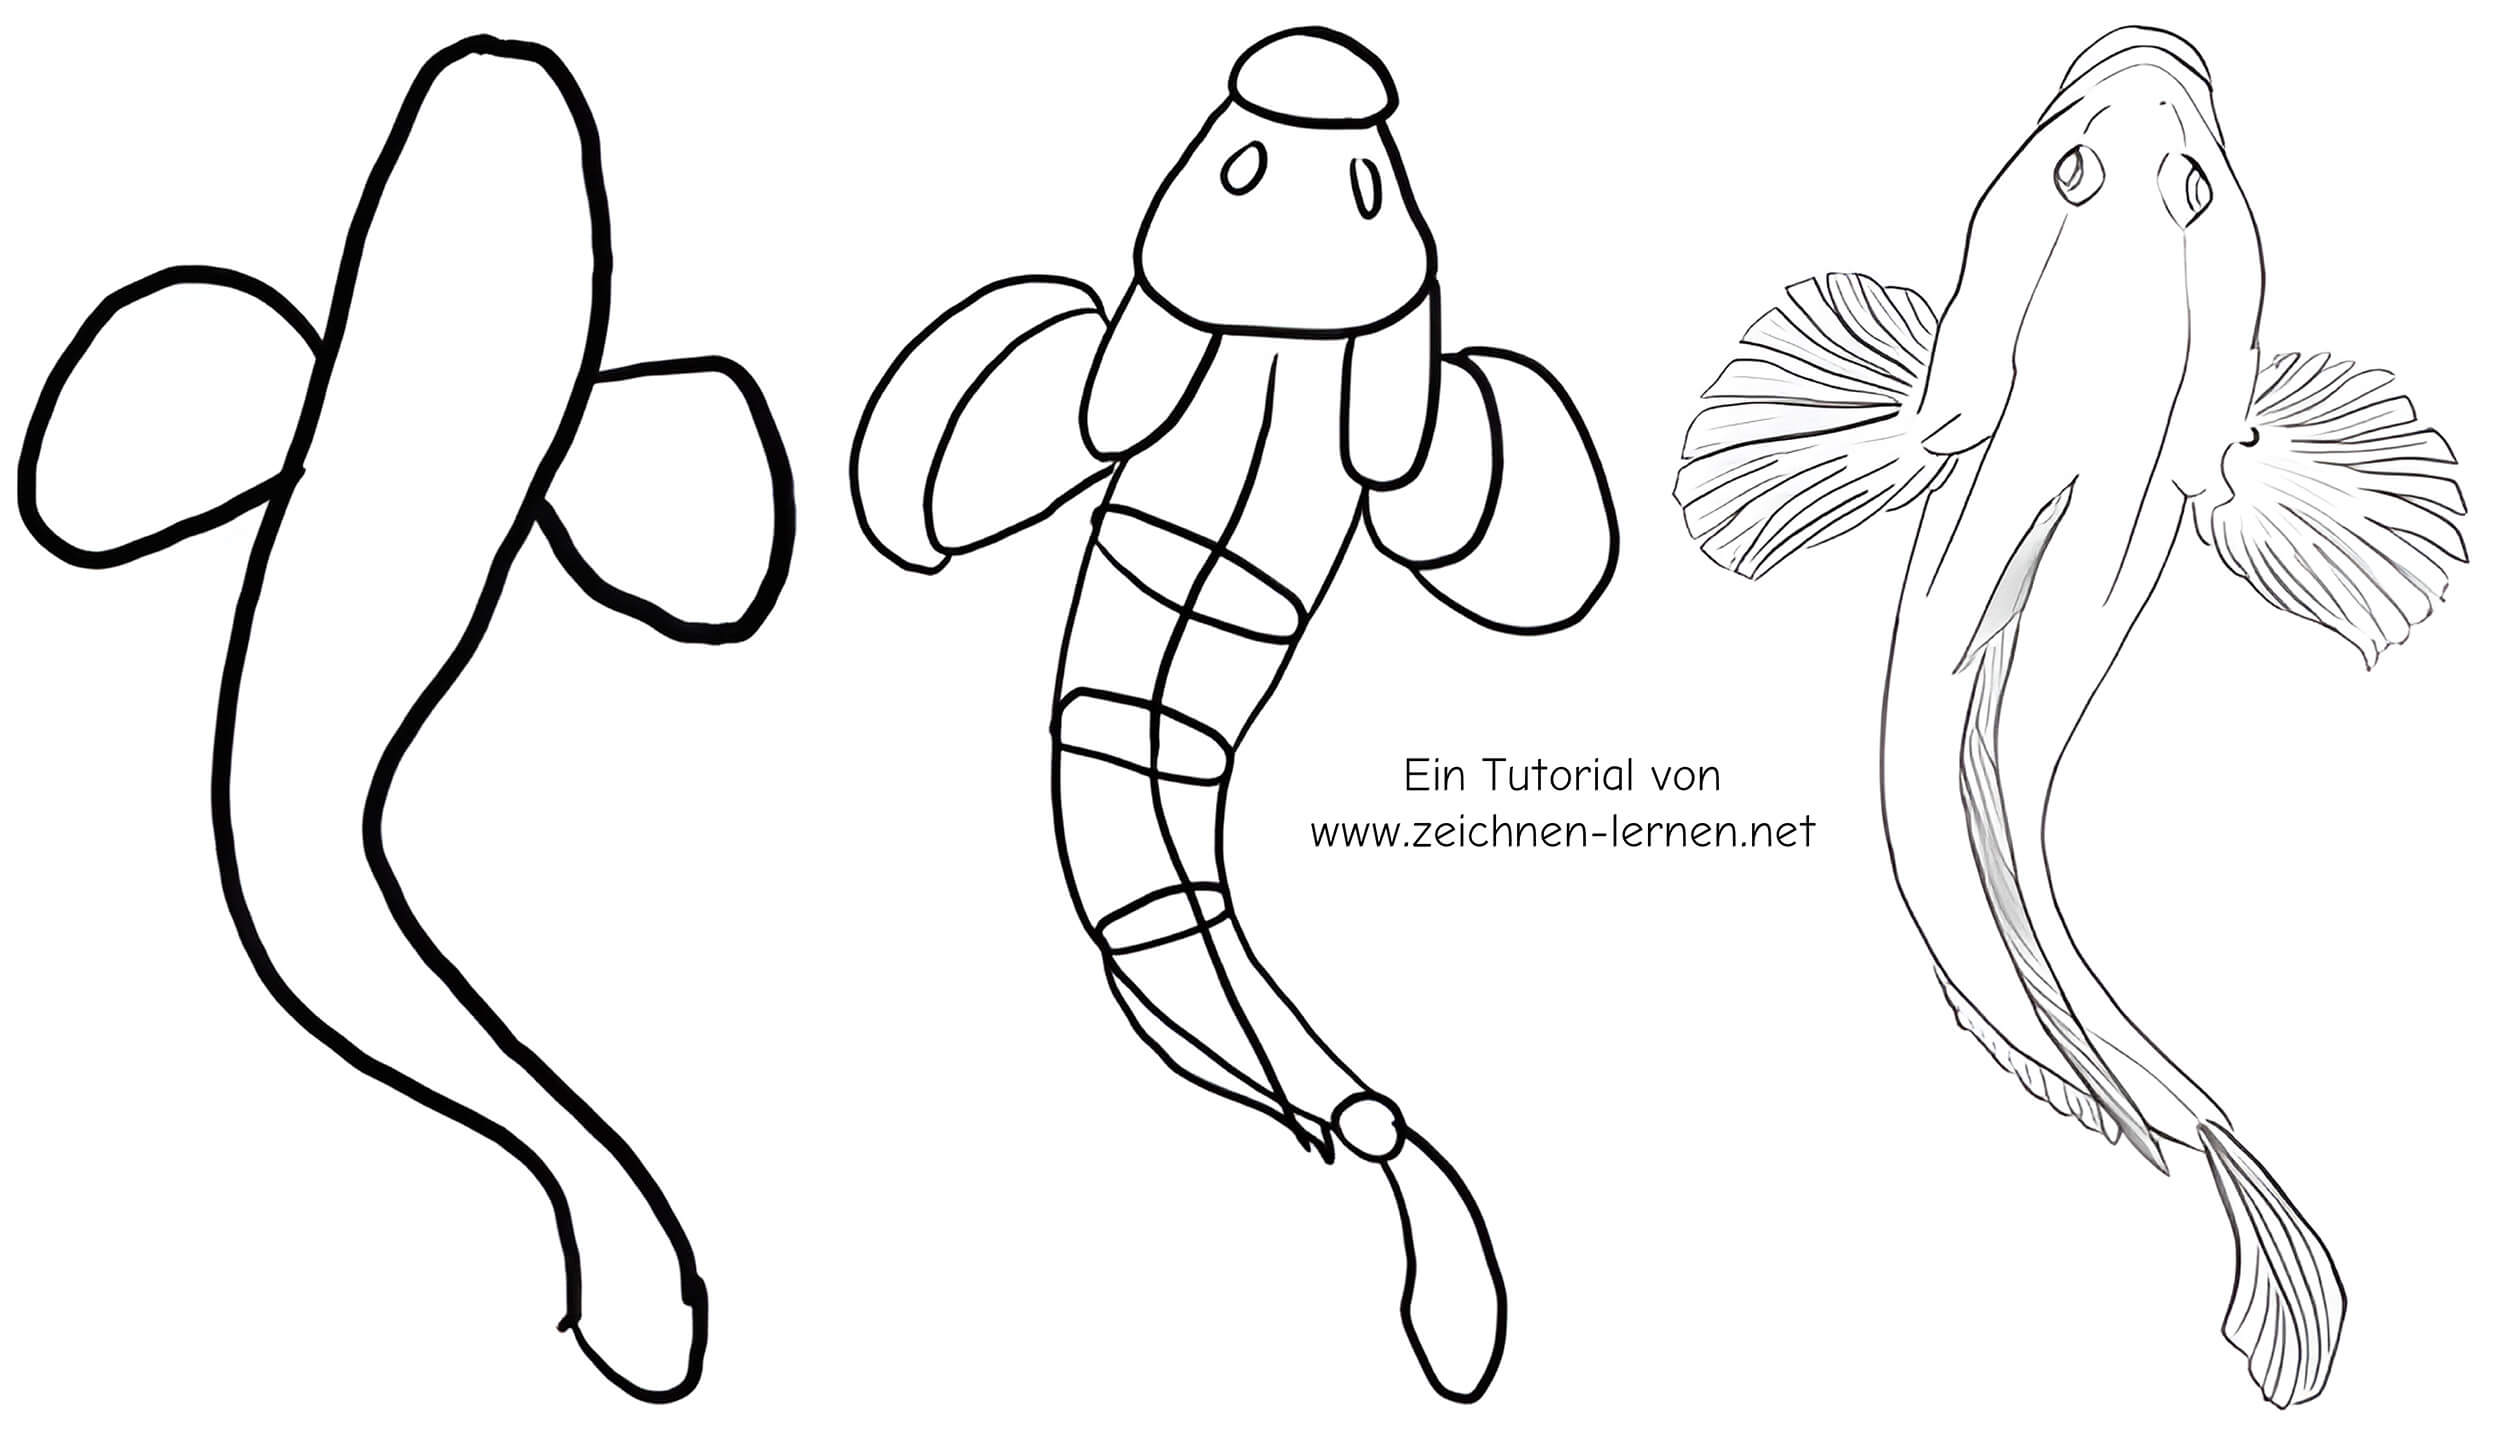 Urzeitlicher Fisch Zeichnentutorial